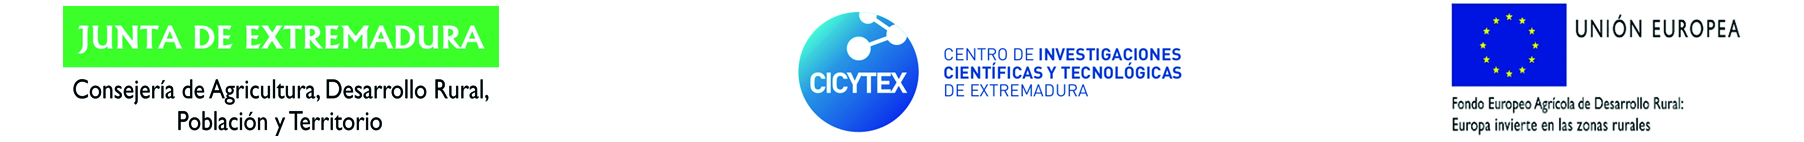 LOGO JUNTA DE EXTREMADURA - CICYTEX - UNION EUROPEA